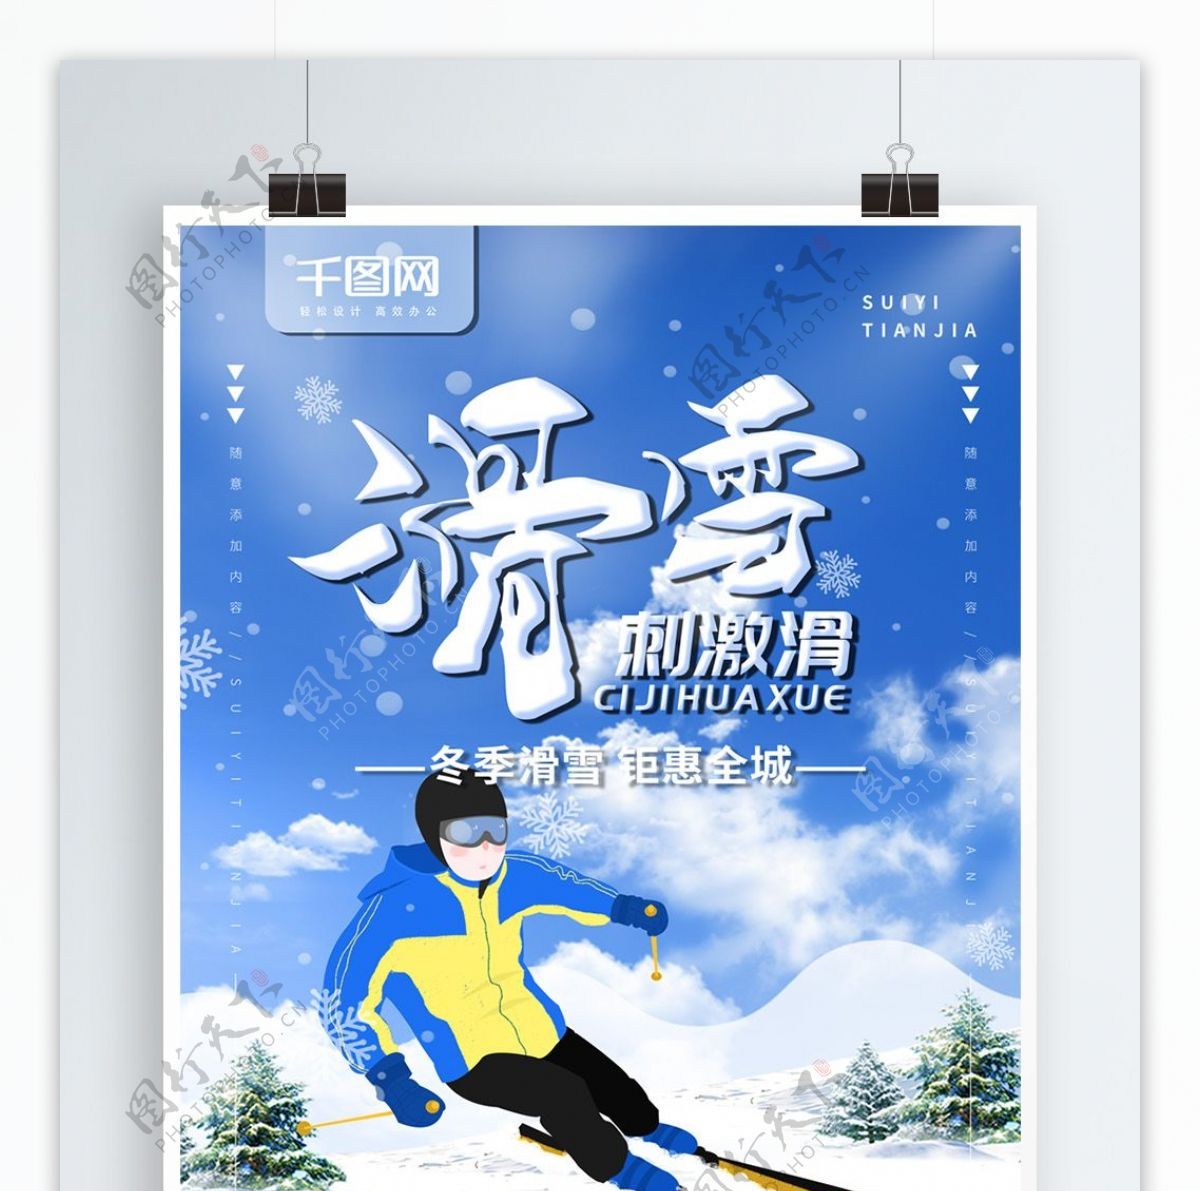 简约蓝色商业海报滑雪宣传海报psd